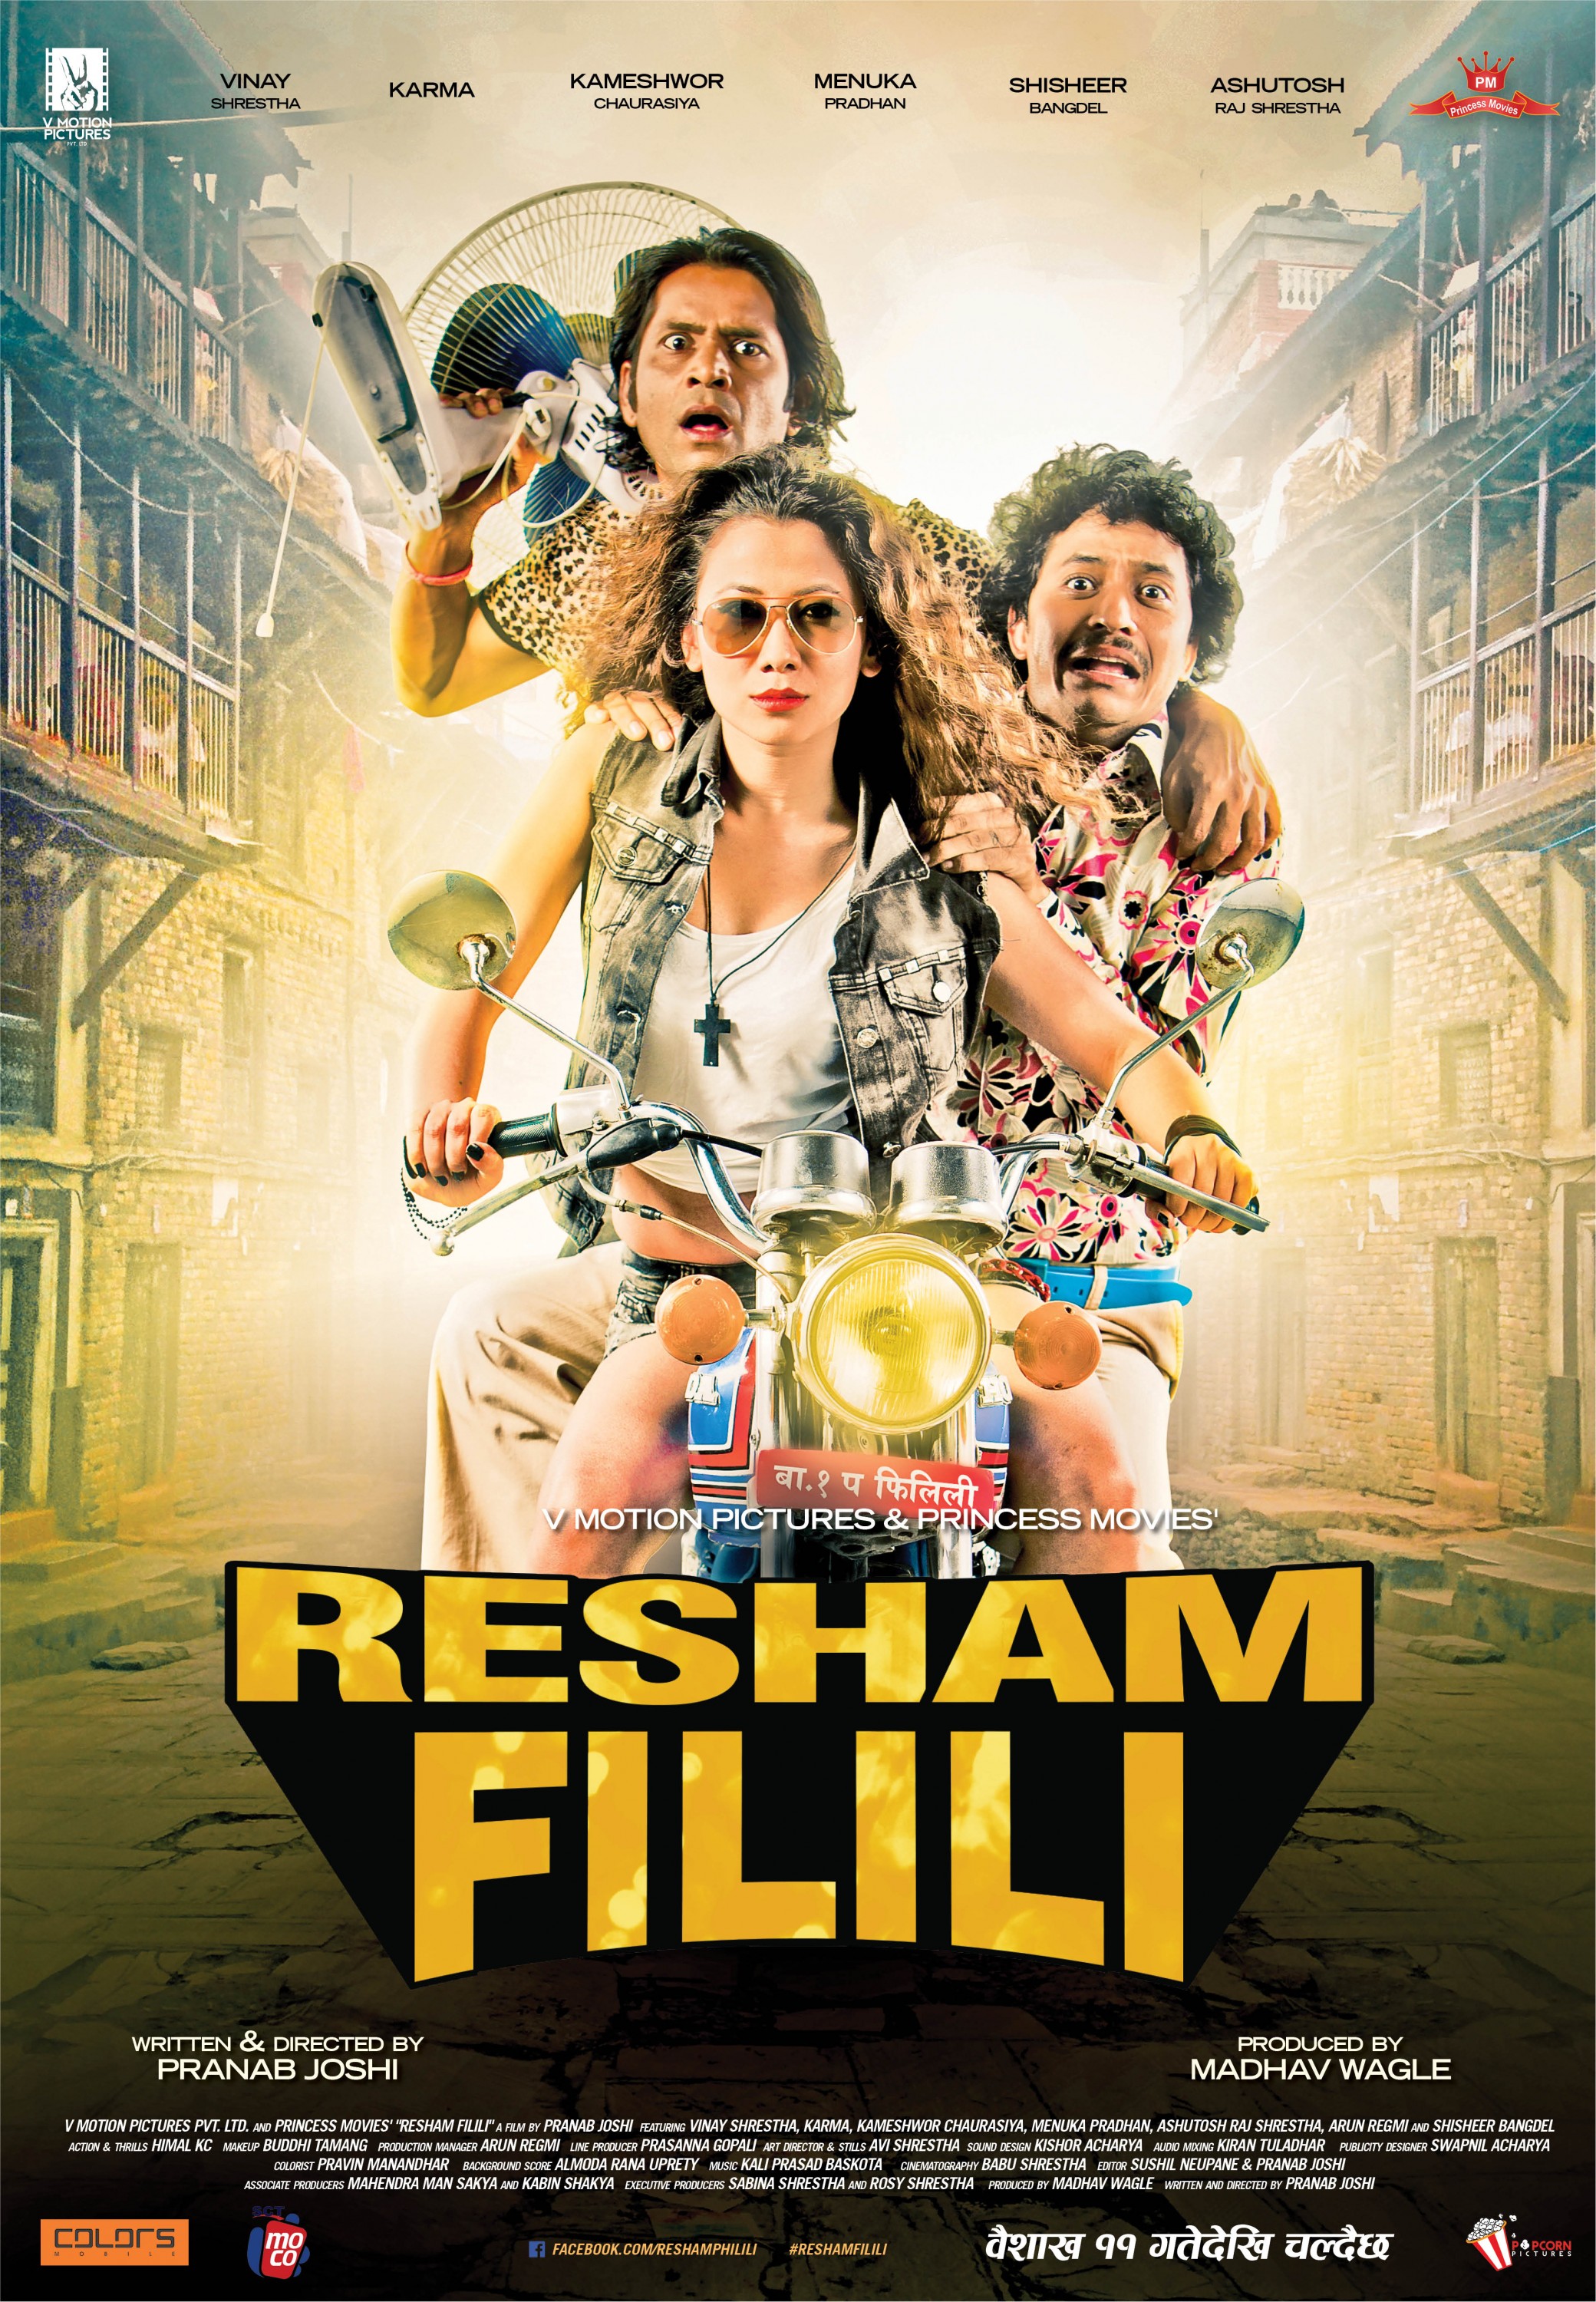 Mega Sized Movie Poster Image for Resham Filili (#1 of 11)